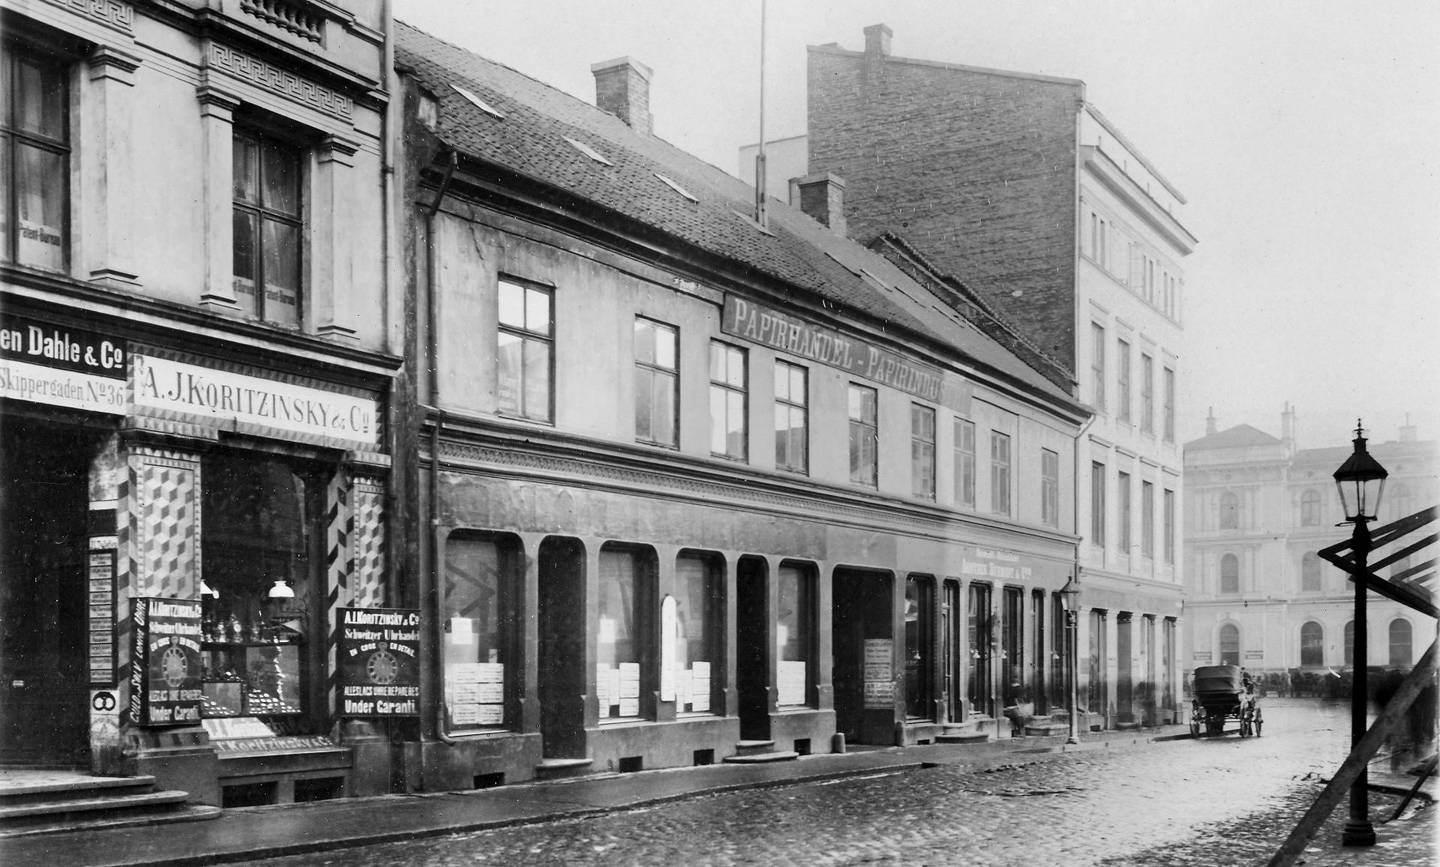 Urmakerfirmaet A. J. Koritzinsky ble etablert i Kristiania i 1885. Bildet viser butikken og Østbanestasjonen i bakgrunnen i 1898.